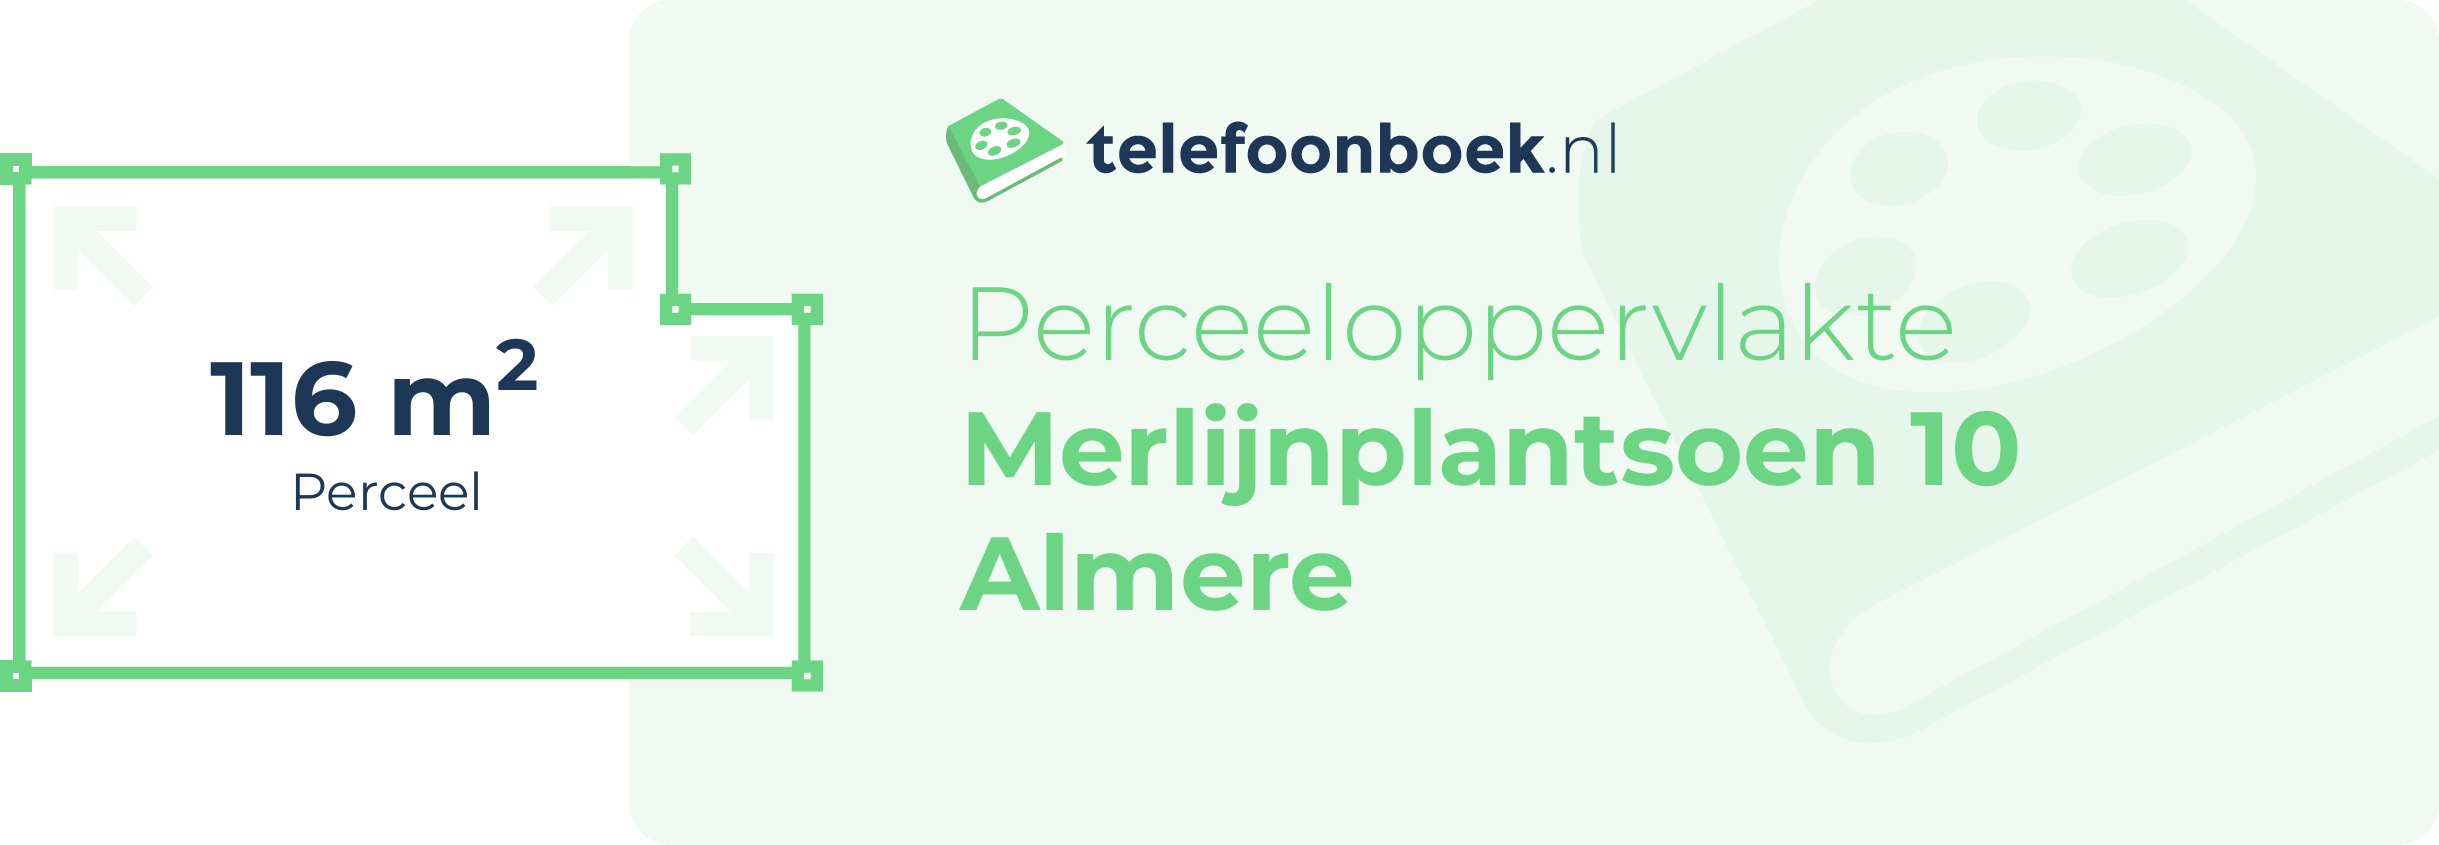 Perceeloppervlakte Merlijnplantsoen 10 Almere